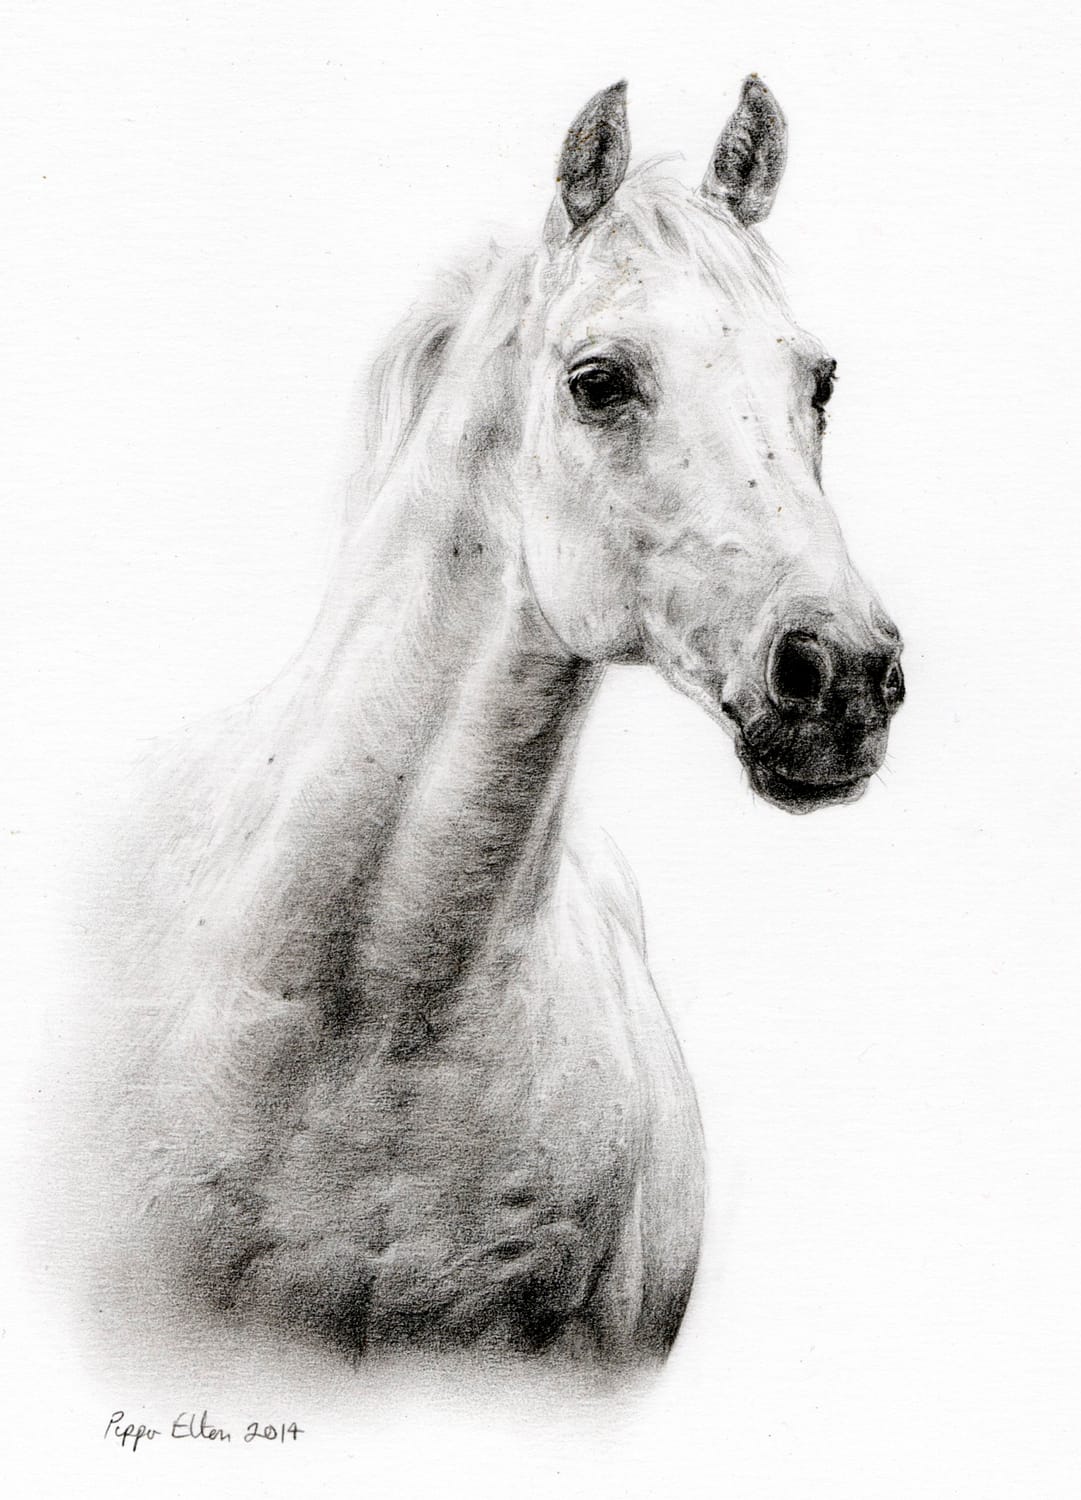 Grey horse portrait in pencil